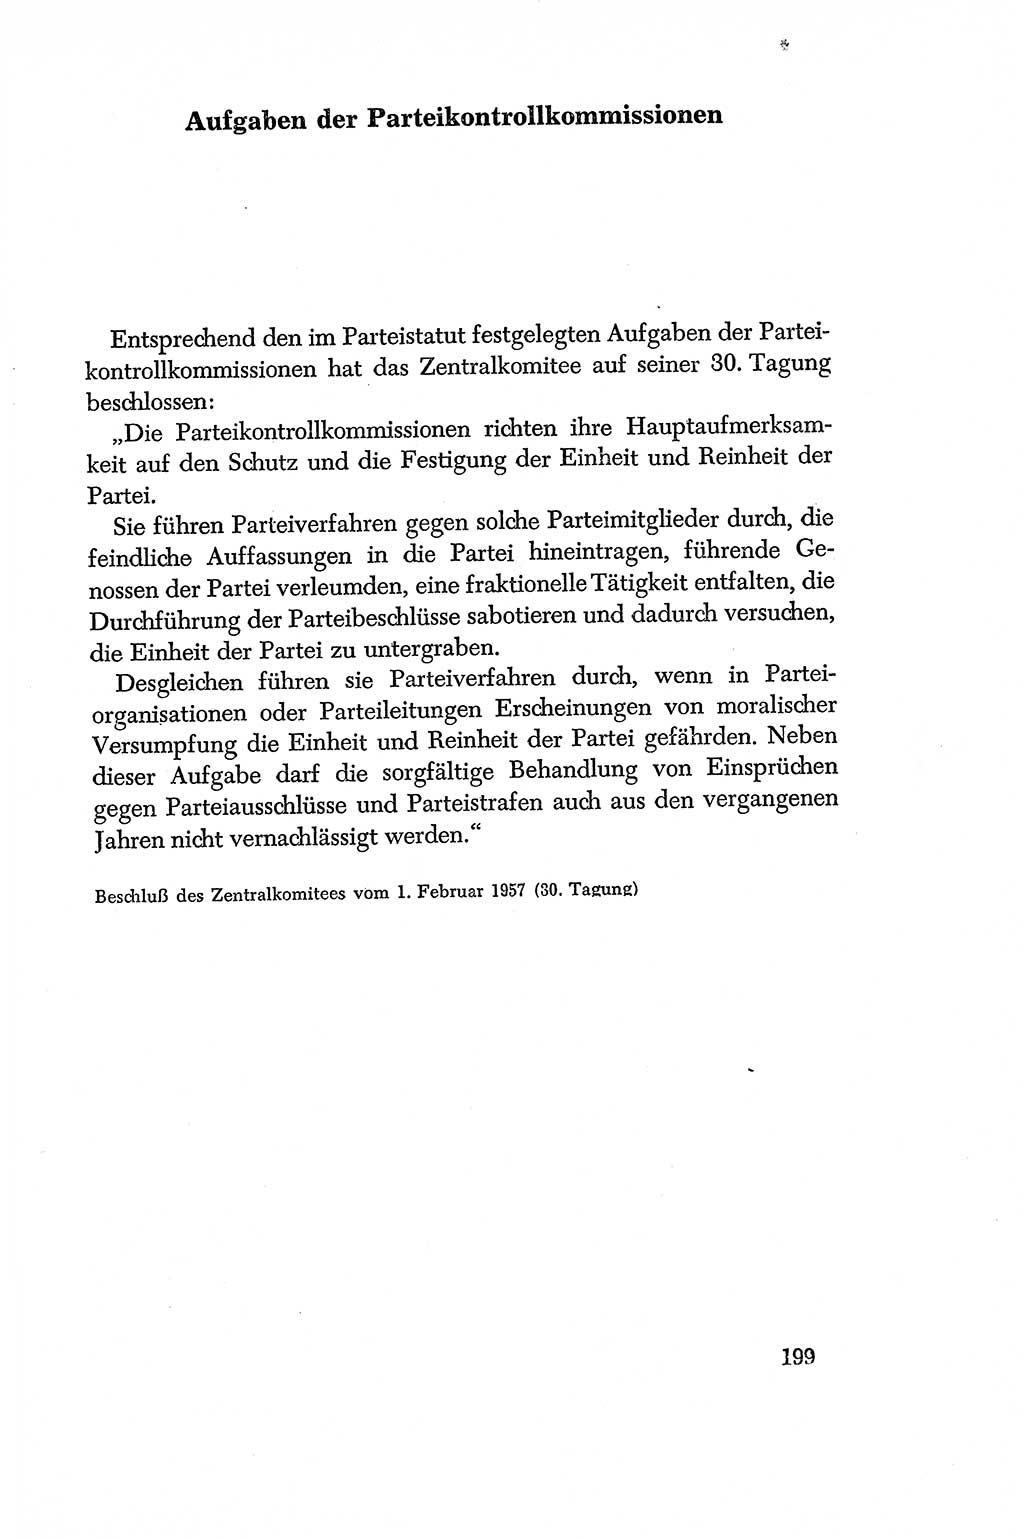 Dokumente der Sozialistischen Einheitspartei Deutschlands (SED) [Deutsche Demokratische Republik (DDR)] 1956-1957, Seite 199 (Dok. SED DDR 1956-1957, S. 199)